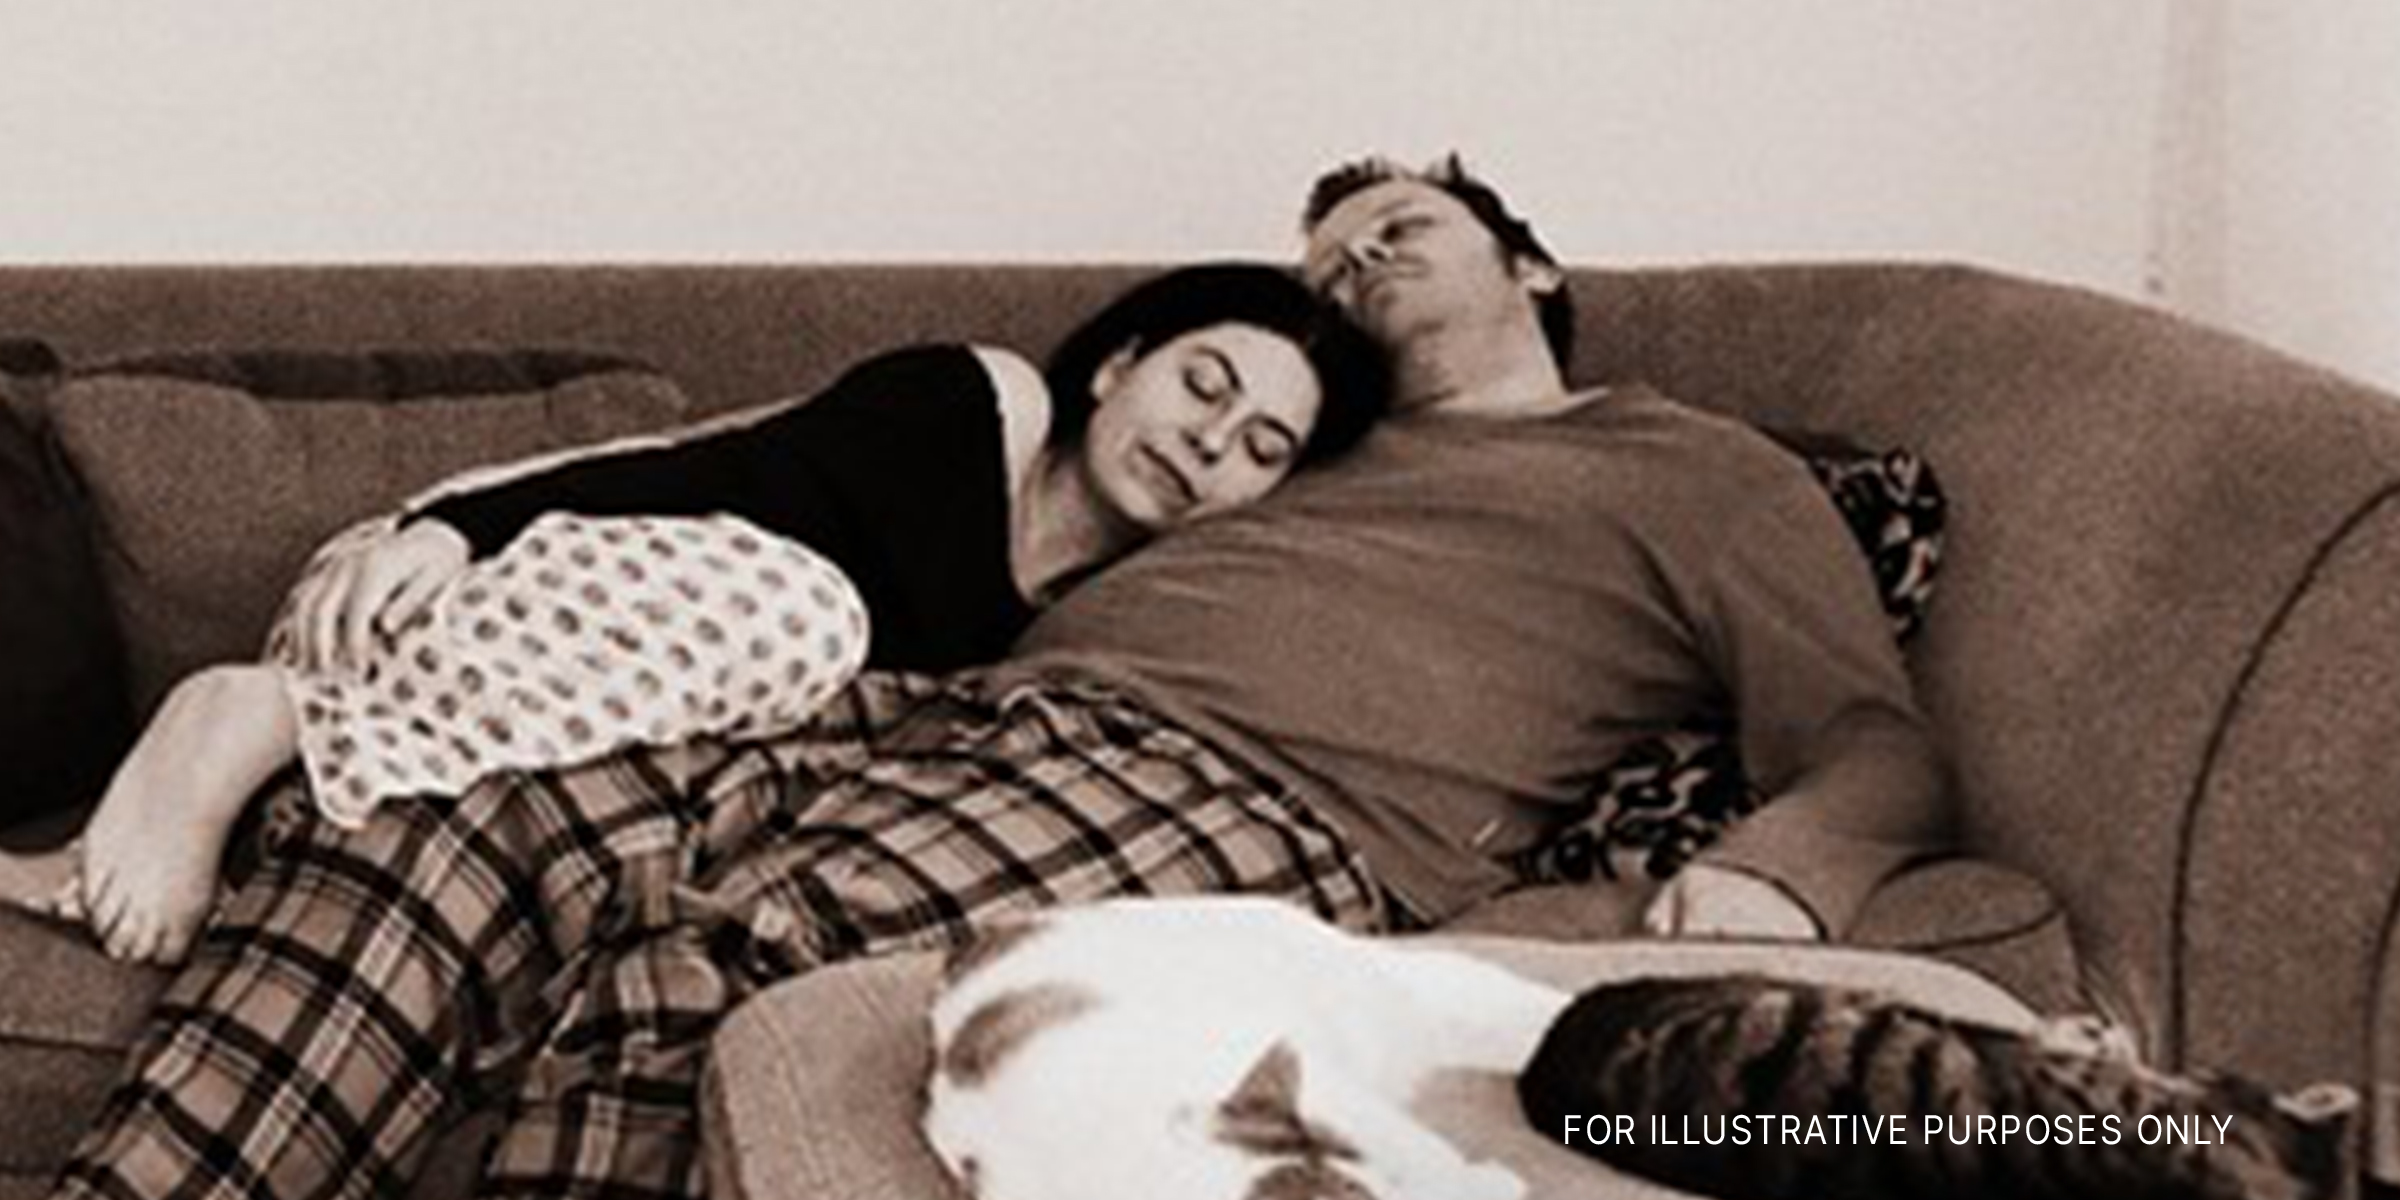 Ein Mann und eine Frau schlafen miteinander | Quelle: flickr.com/Hans Dekker/CC BY-SA 2.0